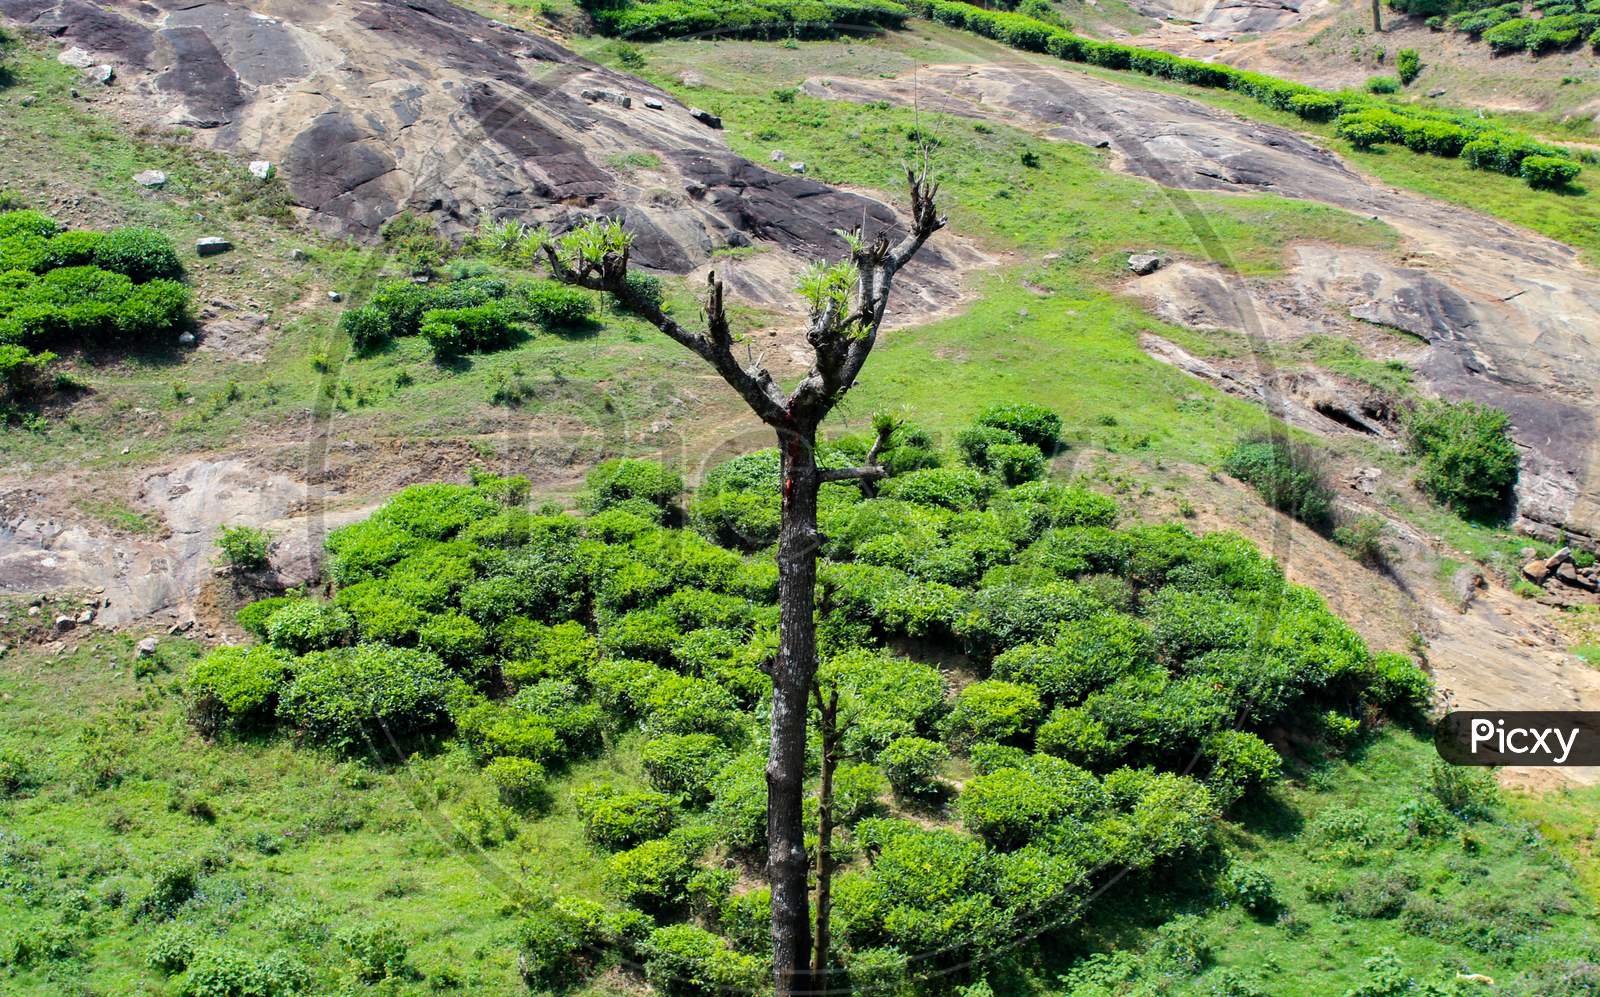 A dying tree near the tea plantations!